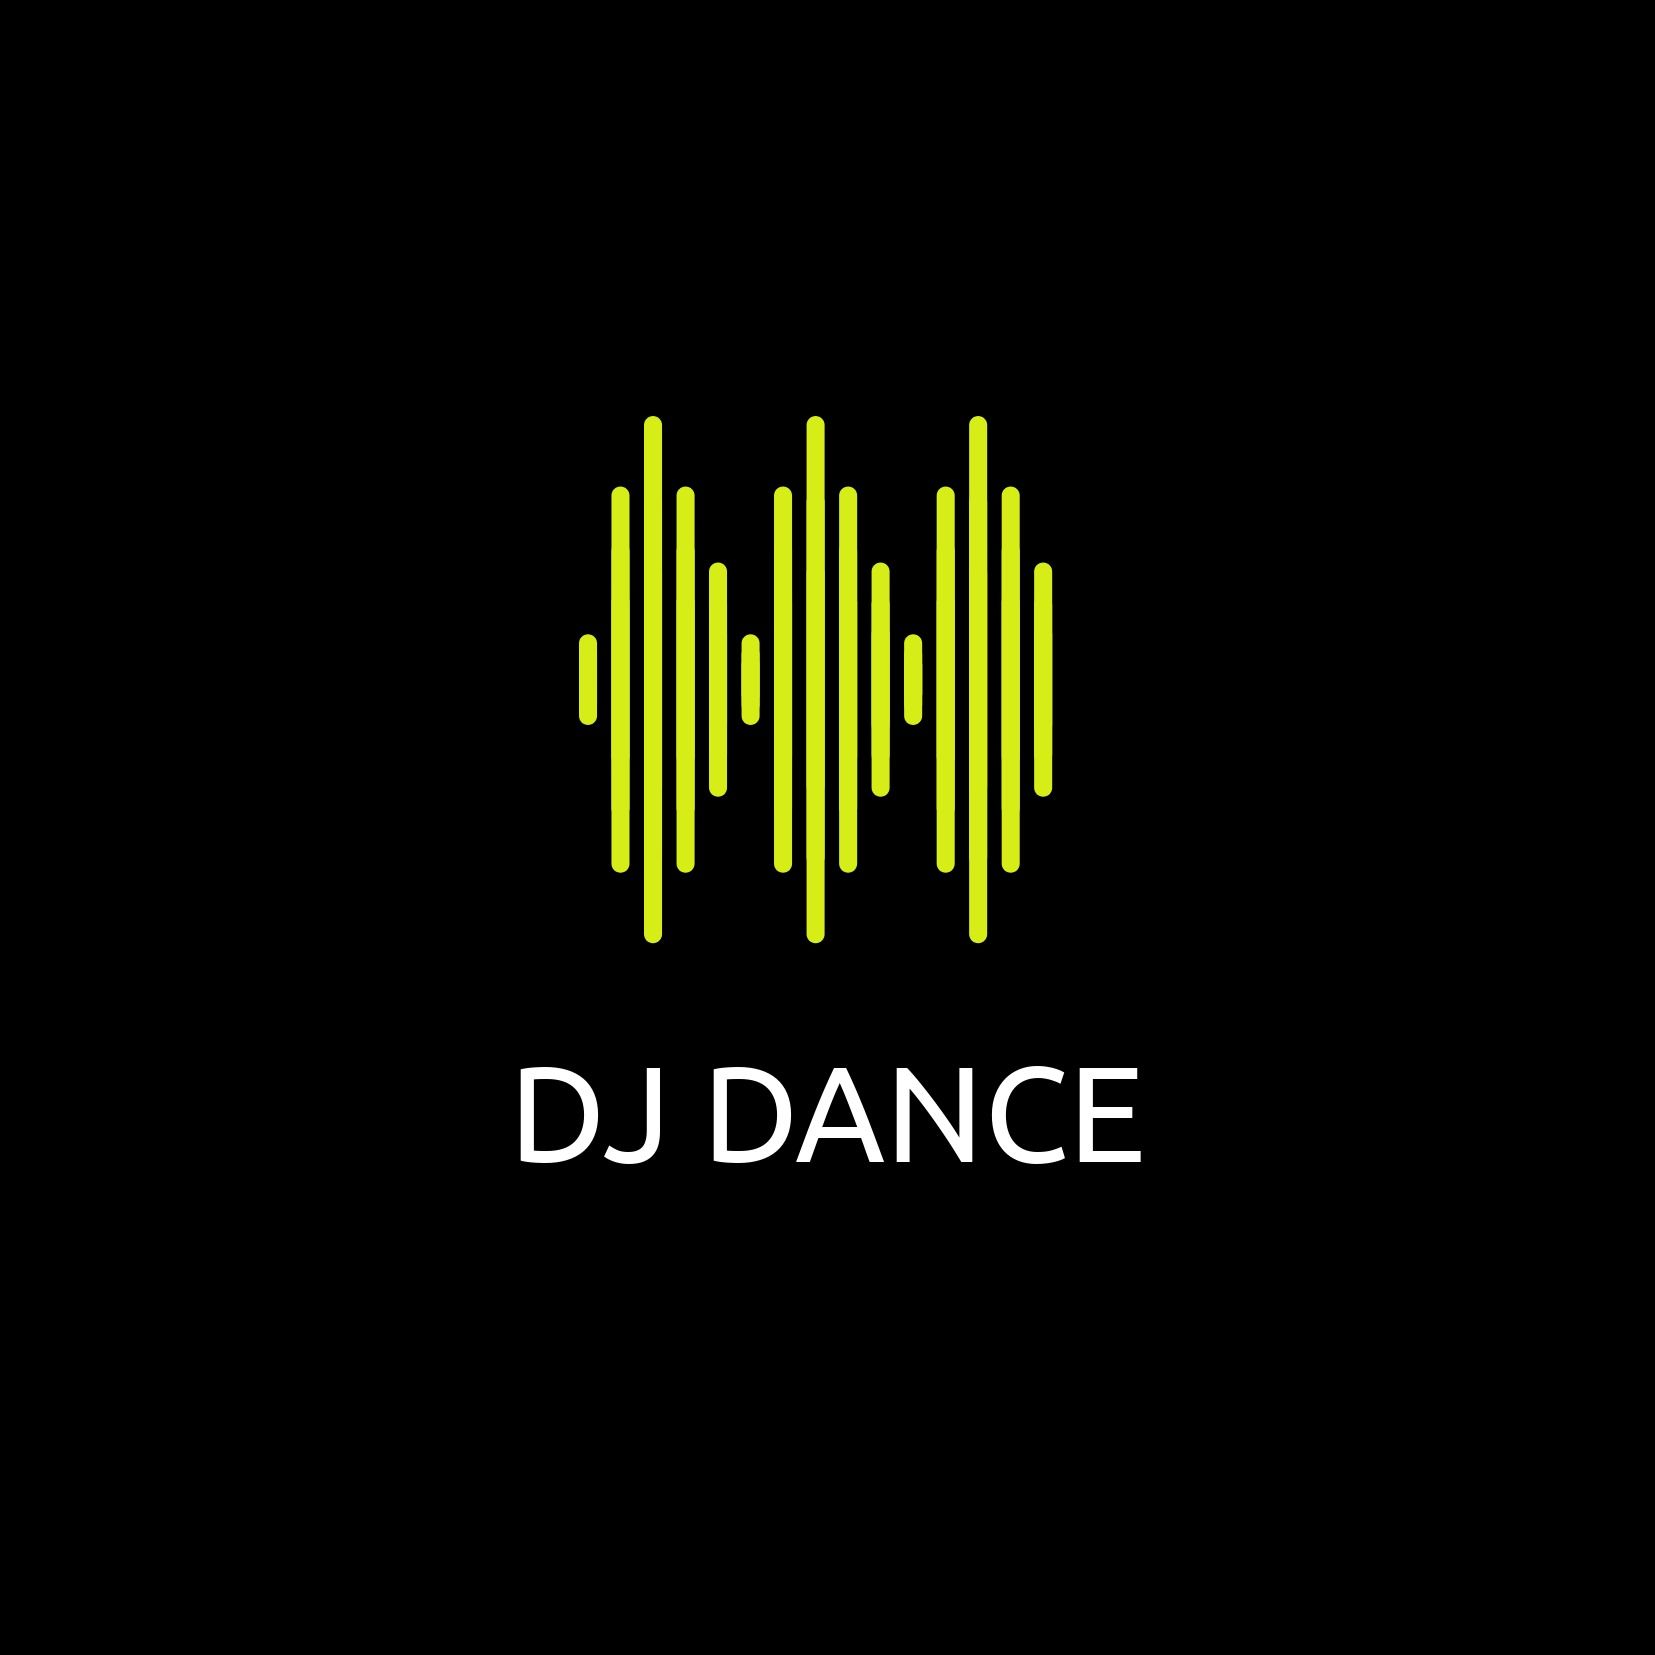 Designs de logotipos criativos para dança de DJ